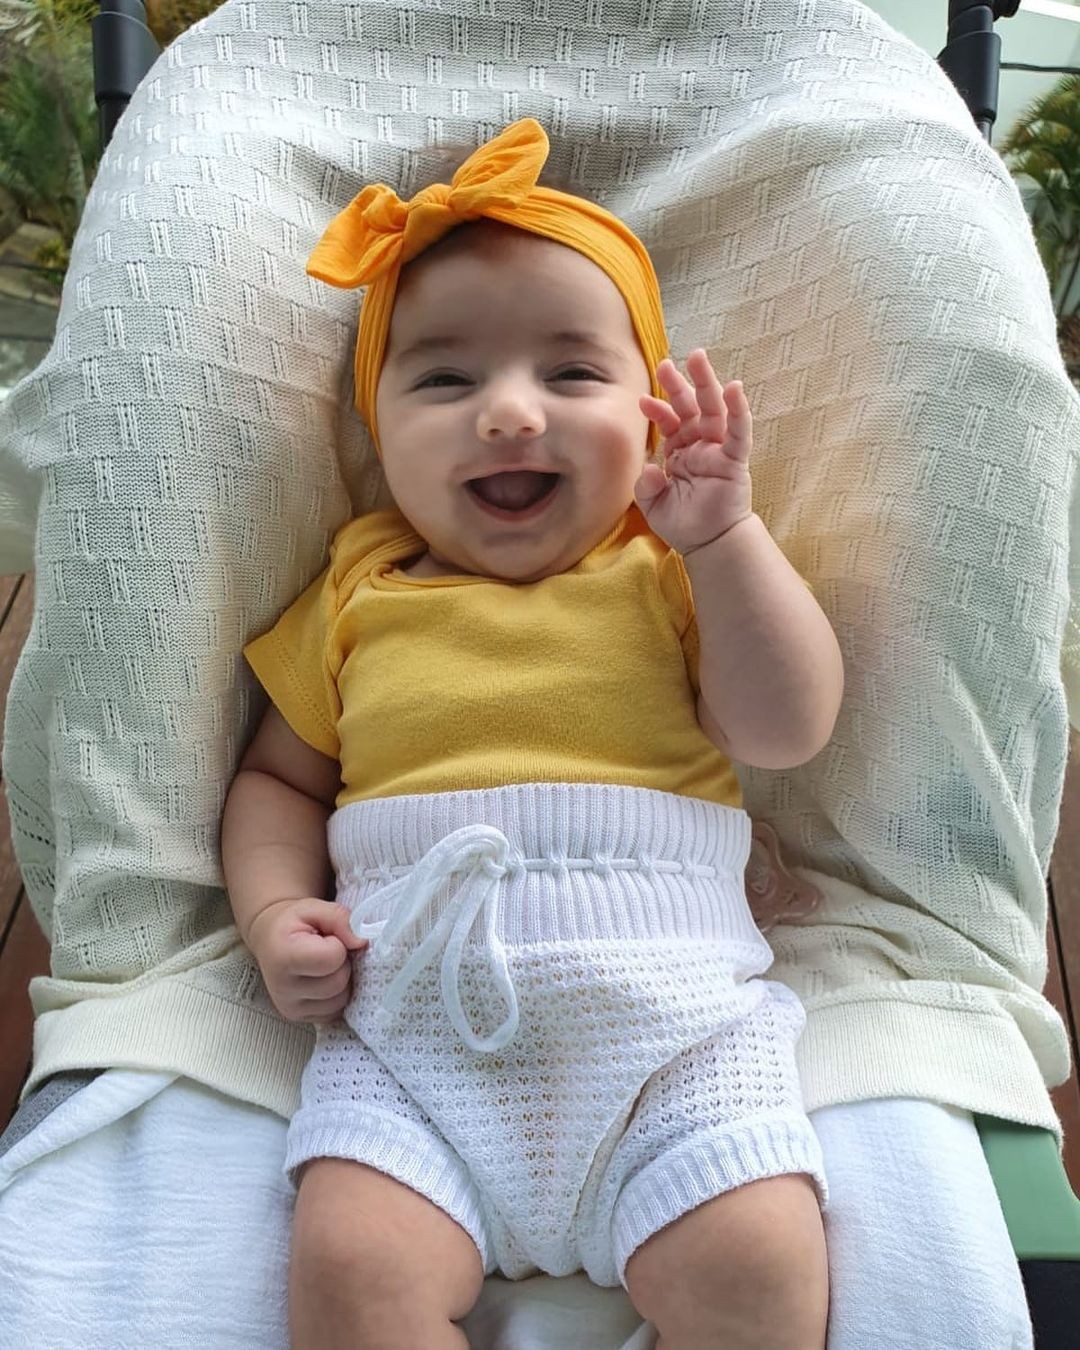 Marcelo Adnet encanta internautas com clique da filha sorrindo (Foto: Reprodução/Instagram)